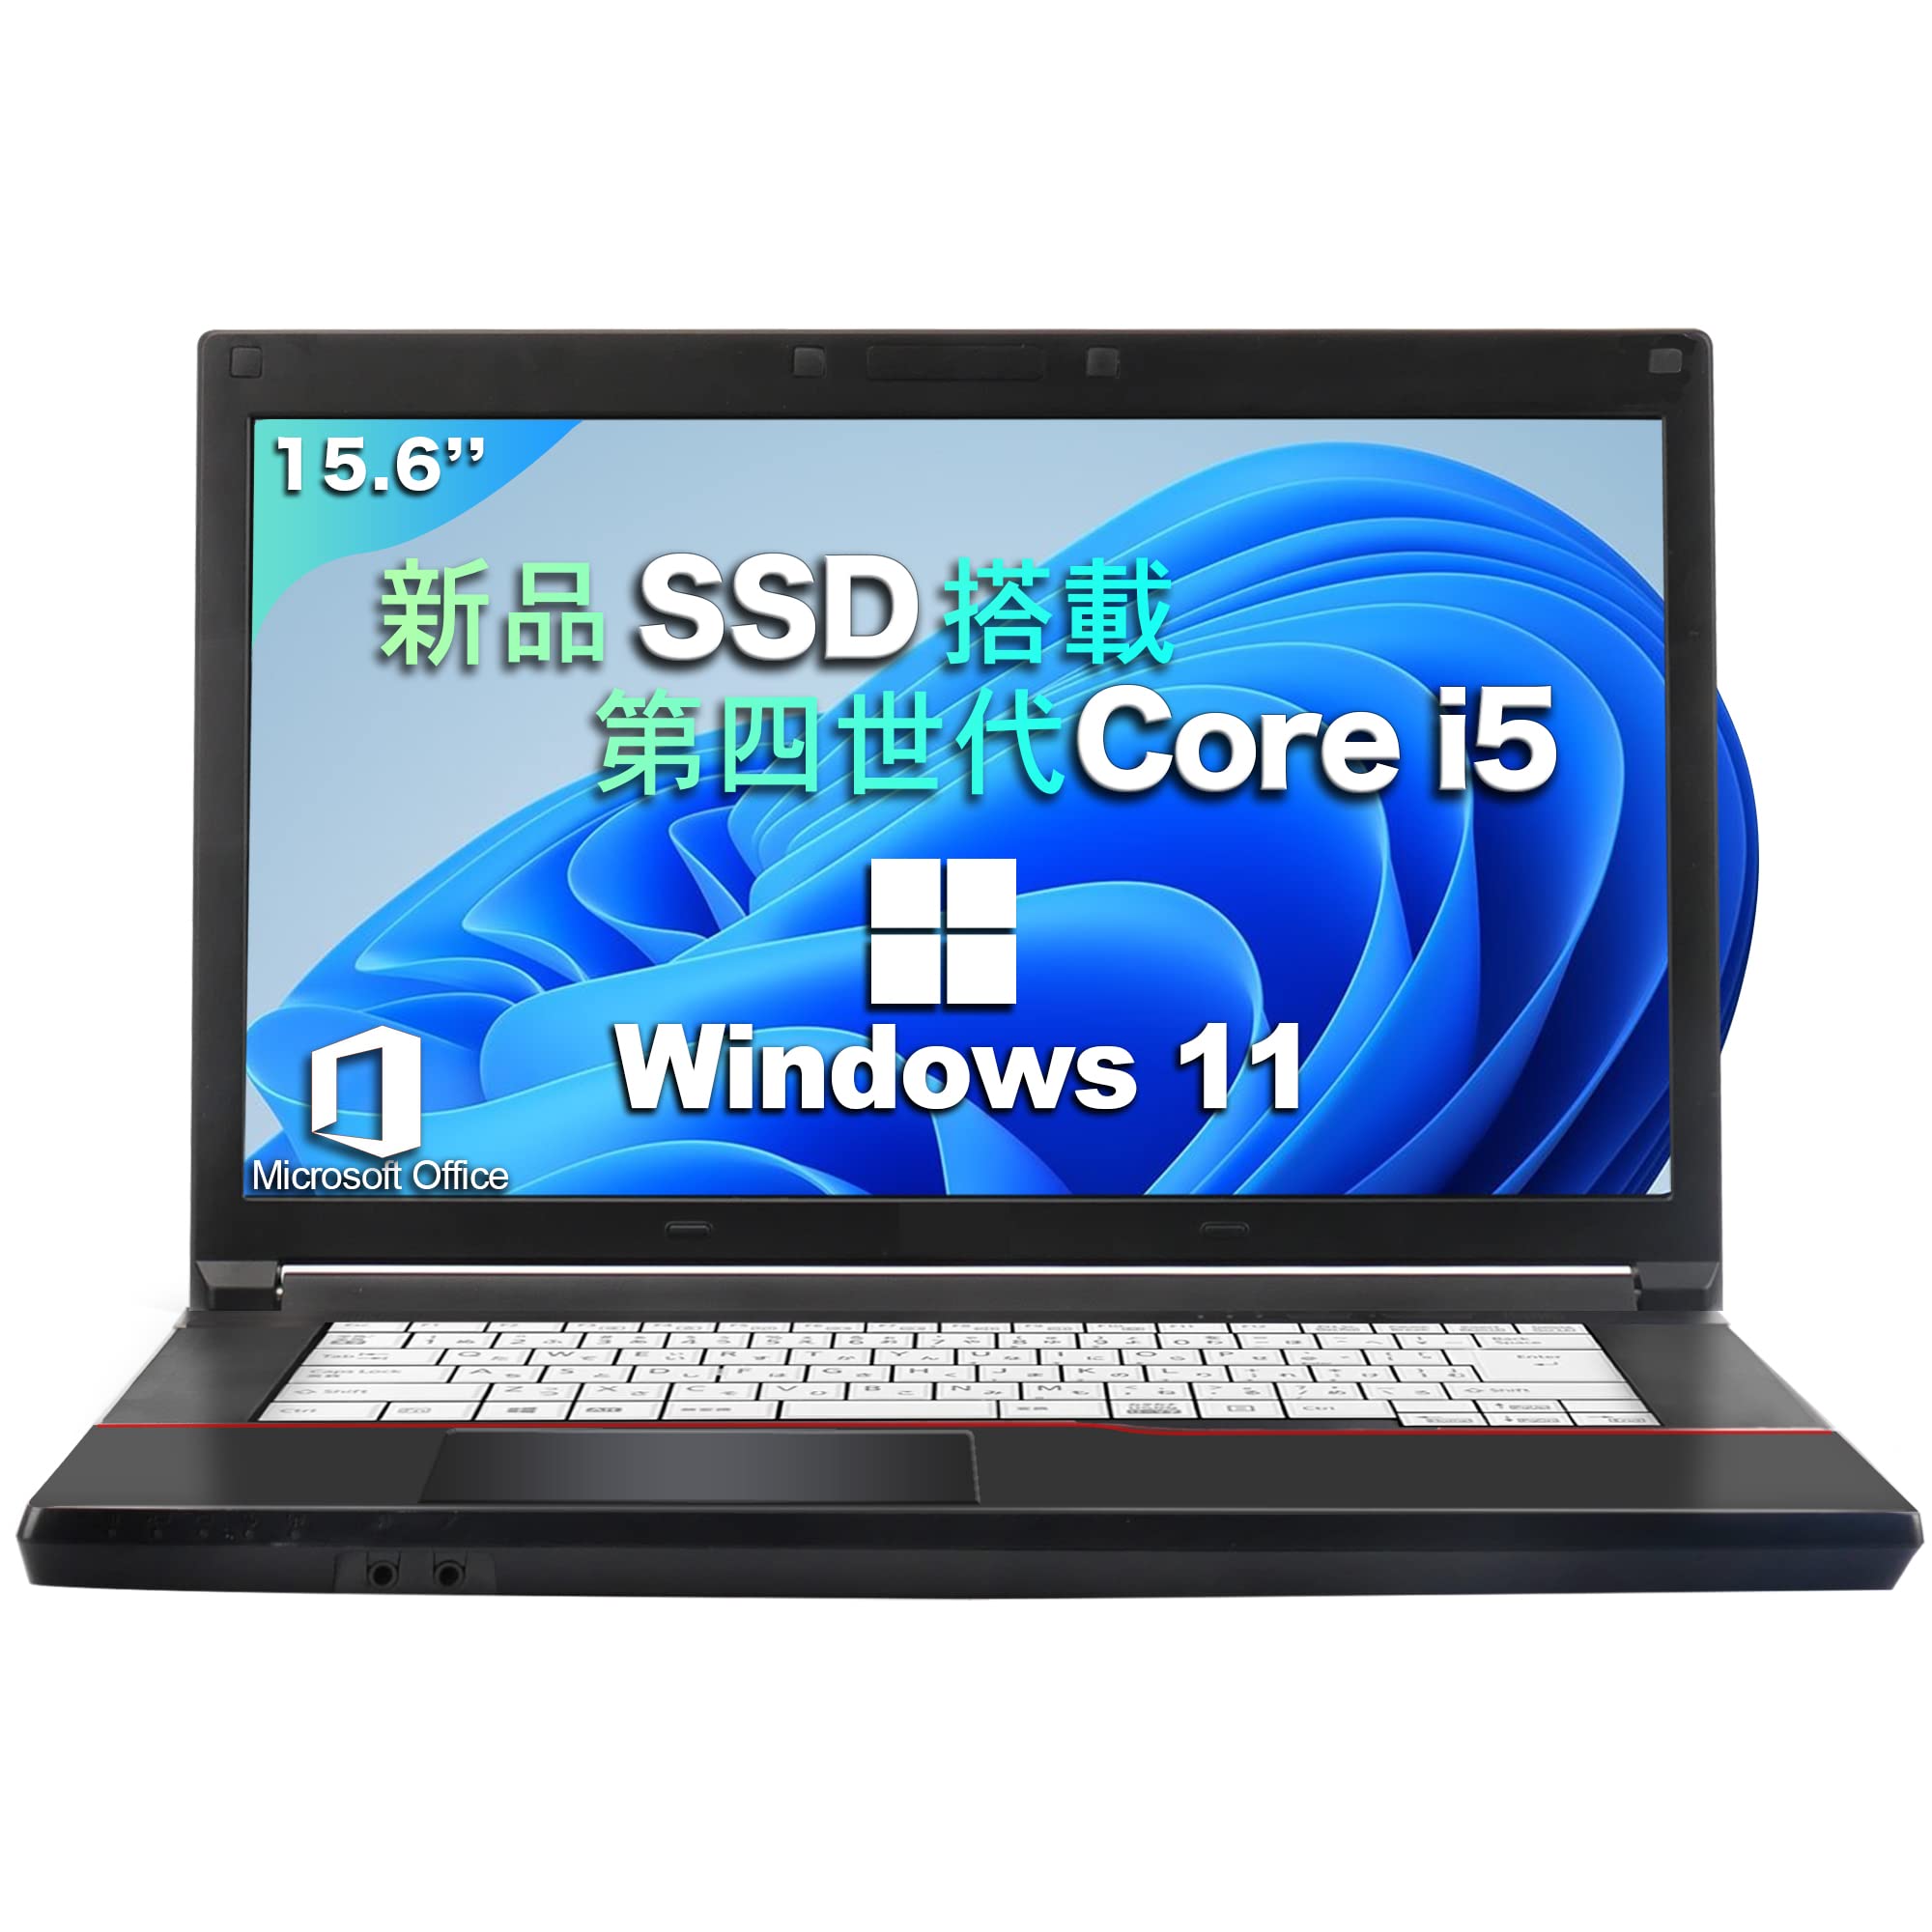 9,072円富士通 最新Windows11 高性能Core i5 爆速SSD ノートパソコン